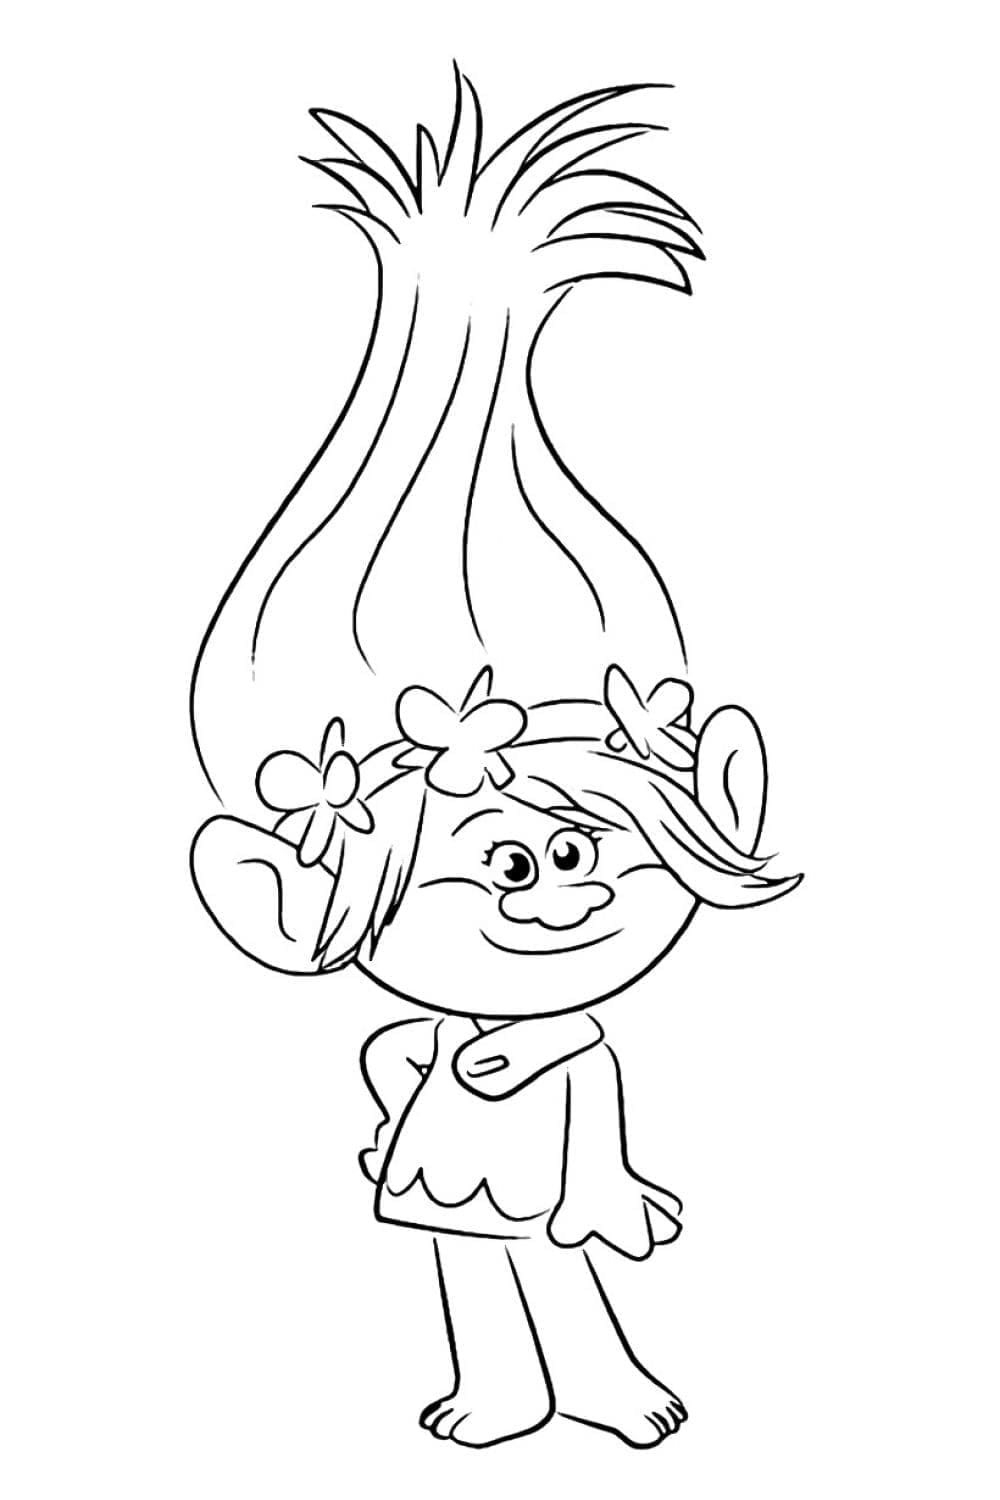 Målarbild Prinsessan Poppy från DreamWorks Trolls